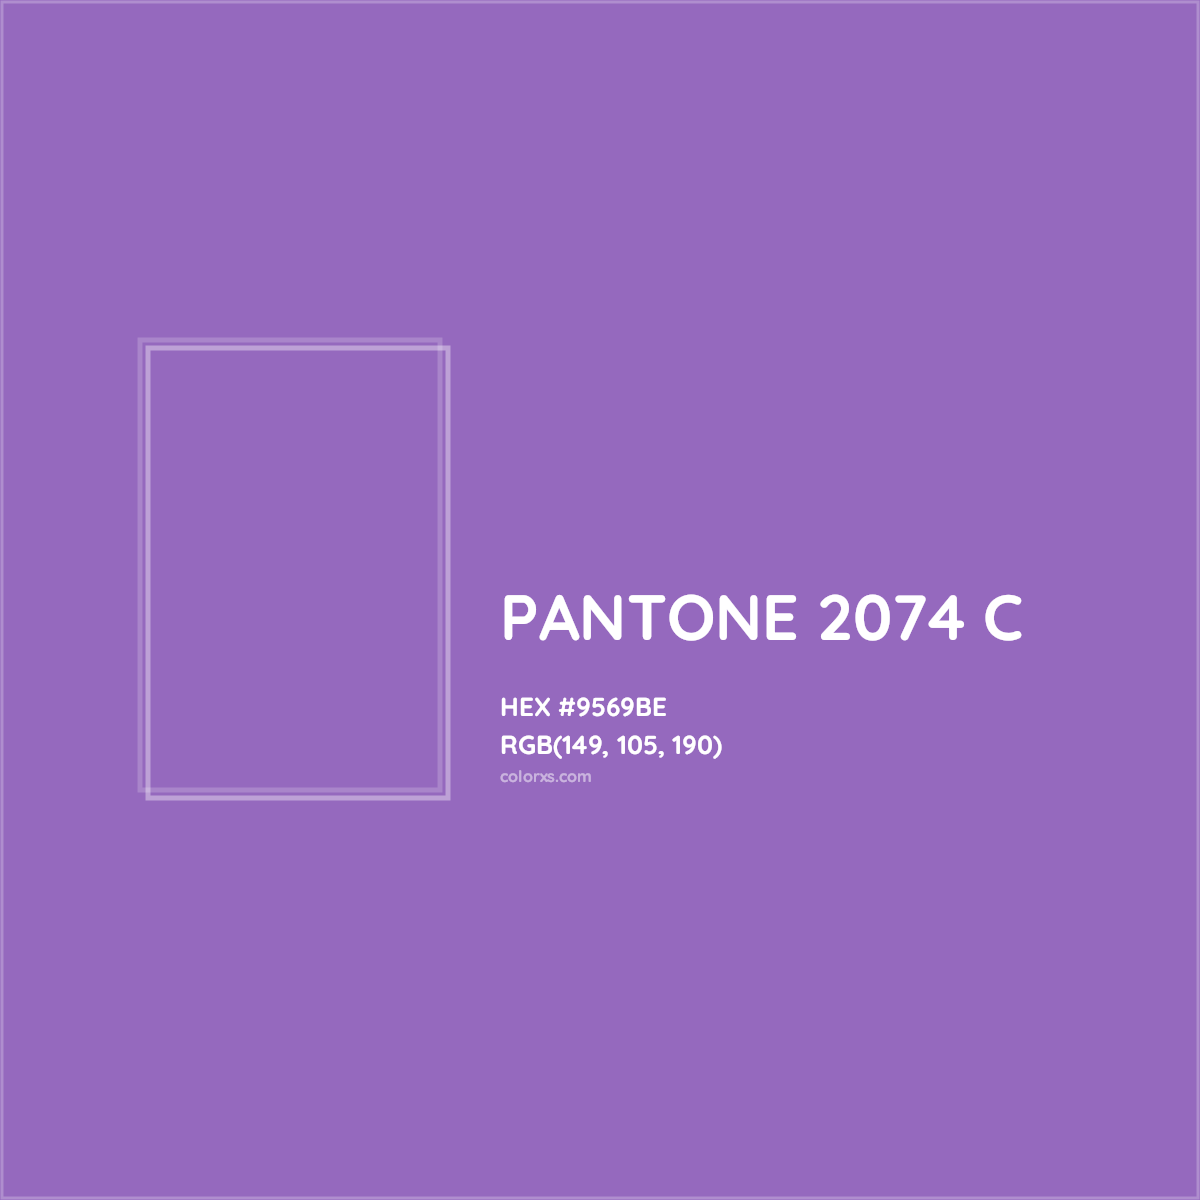 HEX #9569BE PANTONE 2074 C CMS Pantone PMS - Color Code